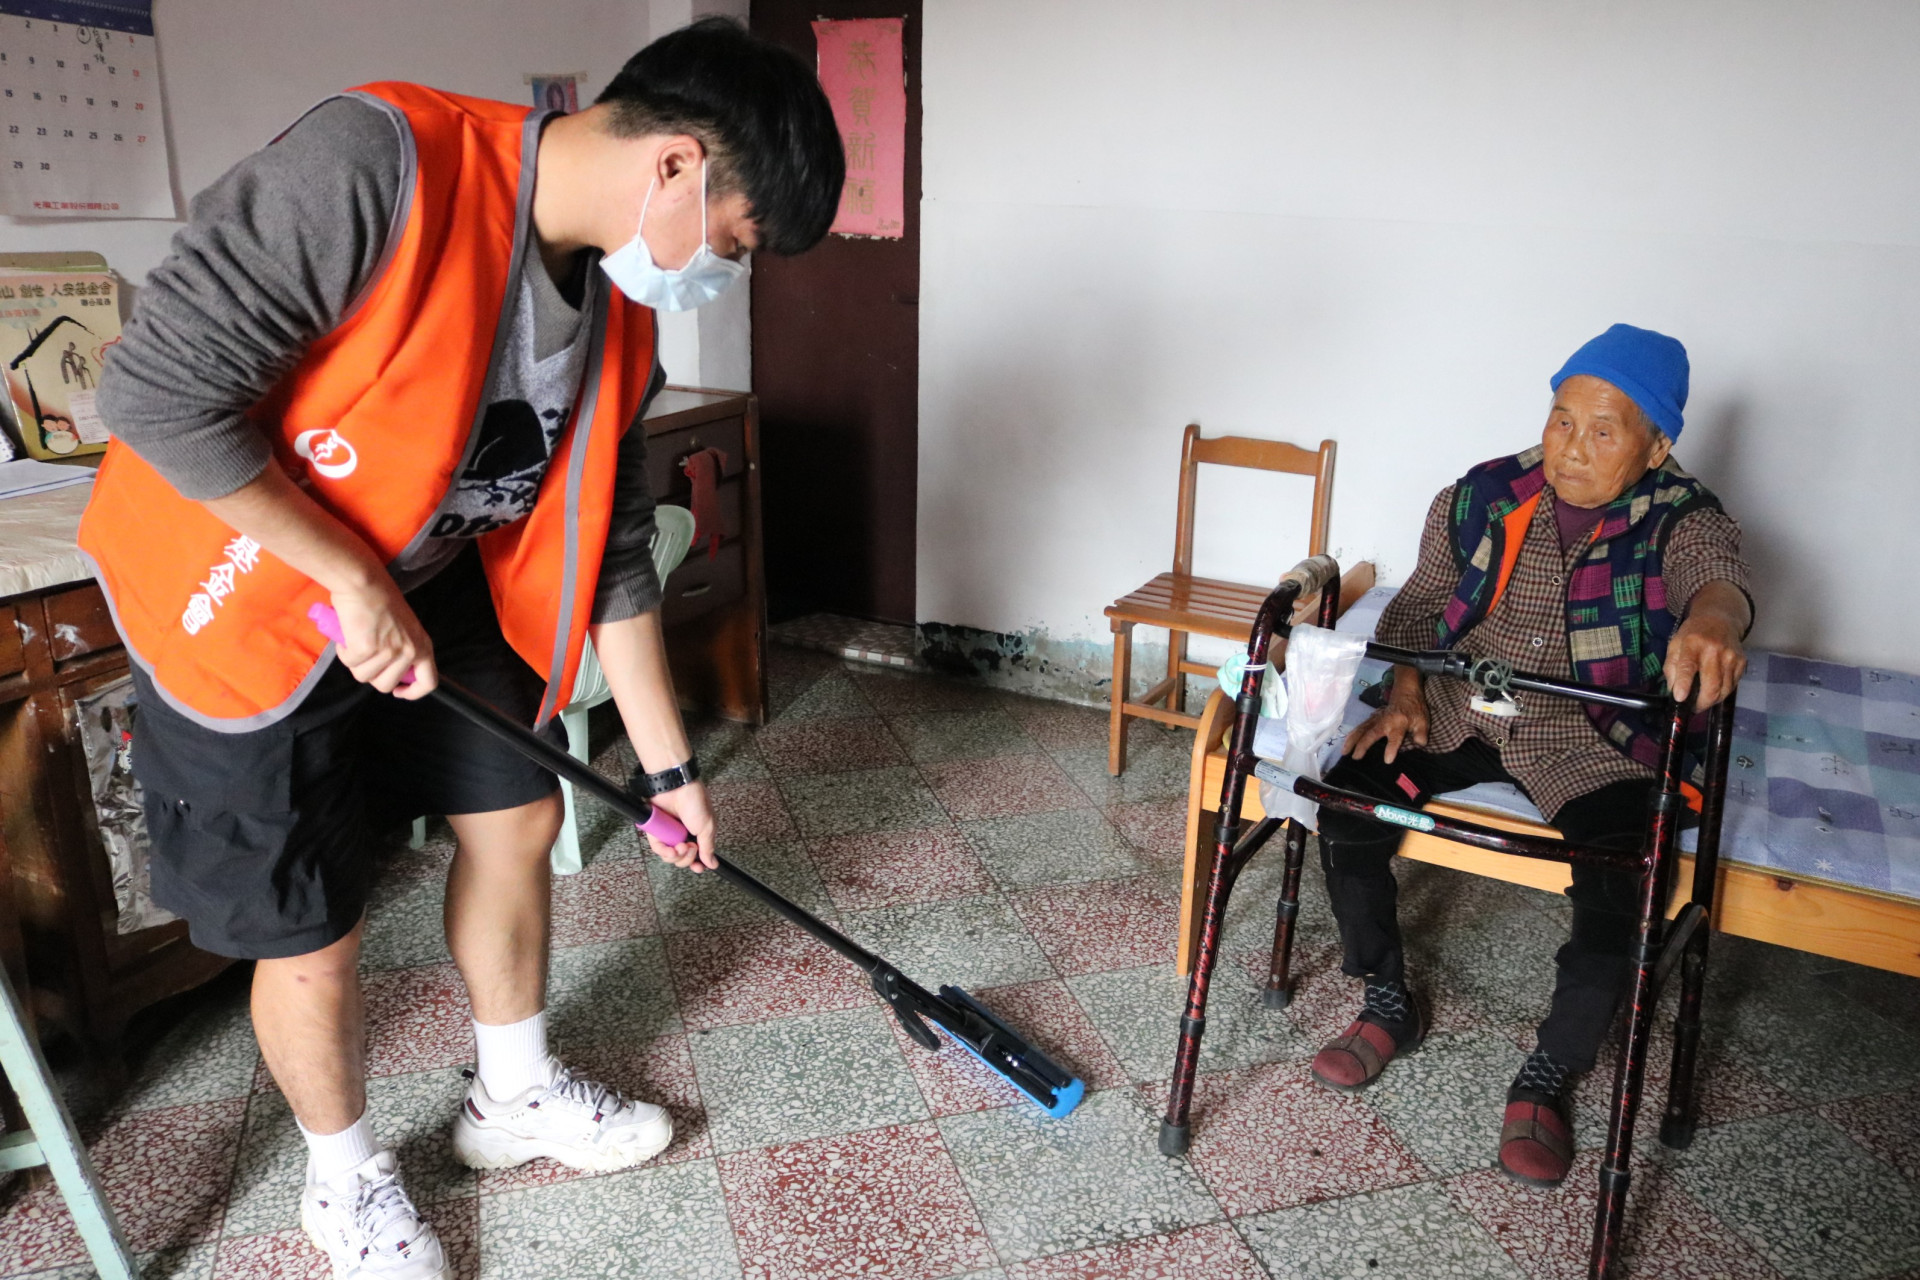 上廁所得淋雨！93歲嬤獨居靠低收度日 大學生暖幫大掃除